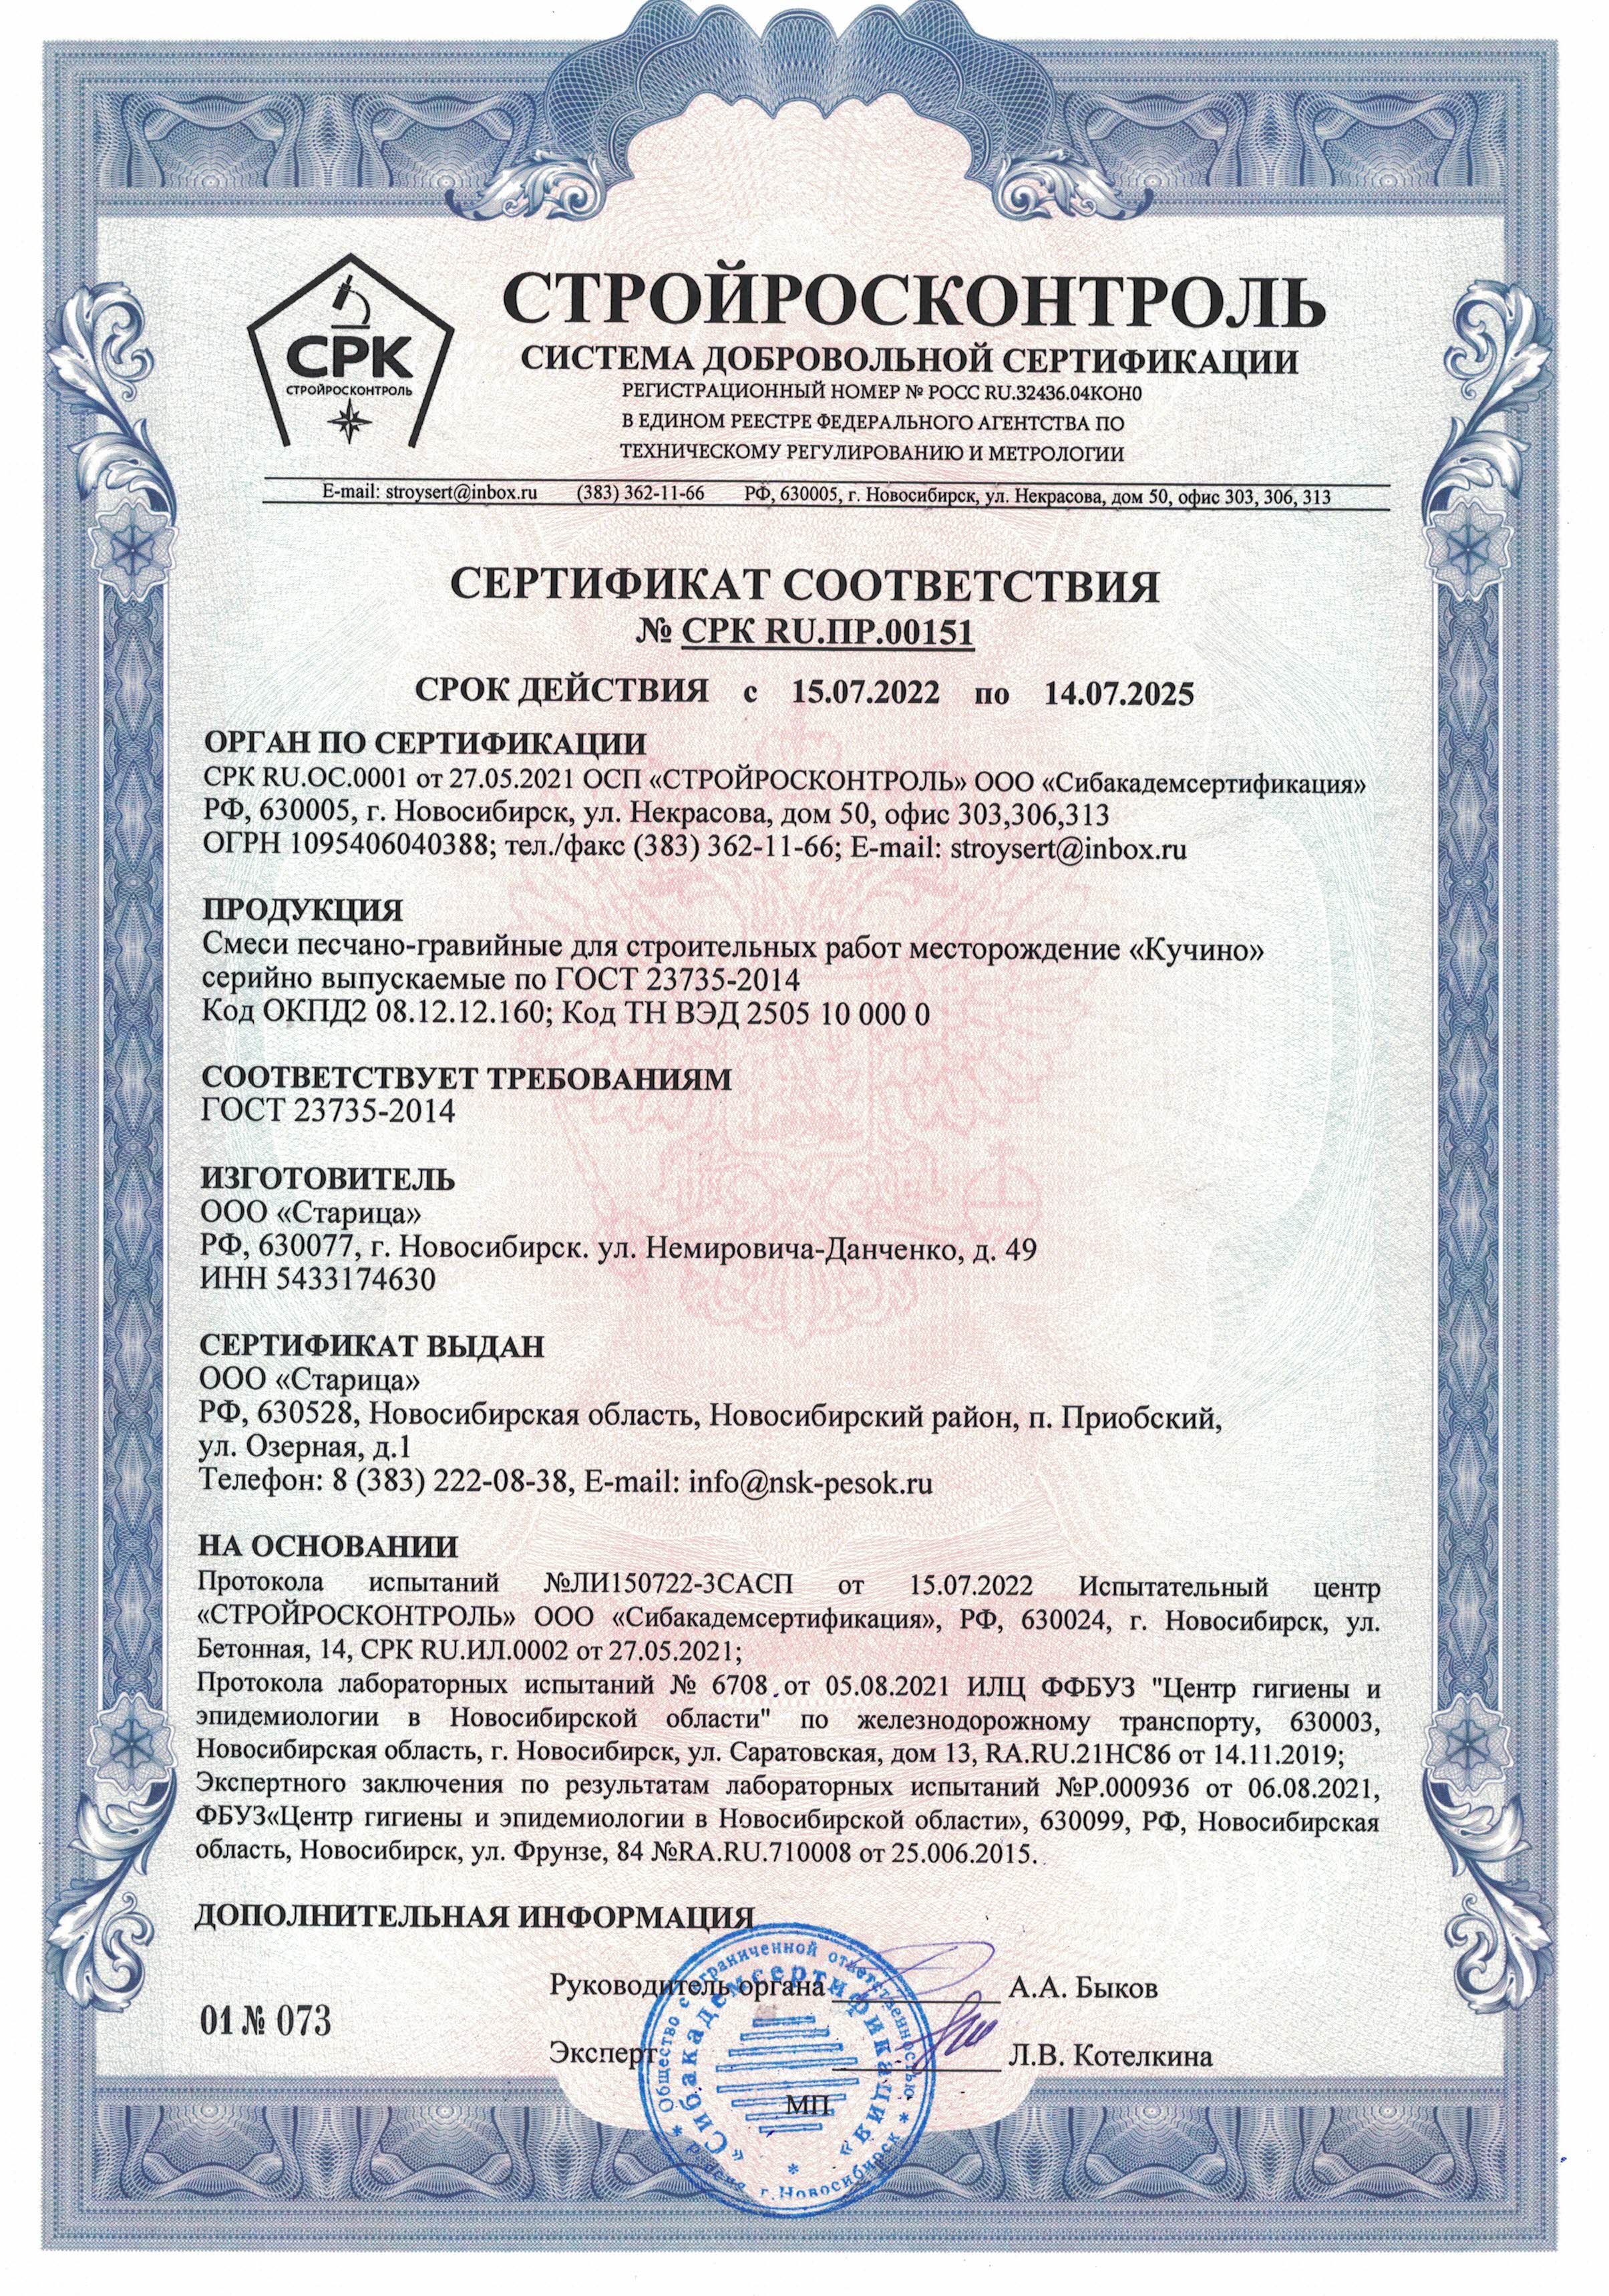 Сертификат соответствия 2022-2025 на ПГС карьер Кучино